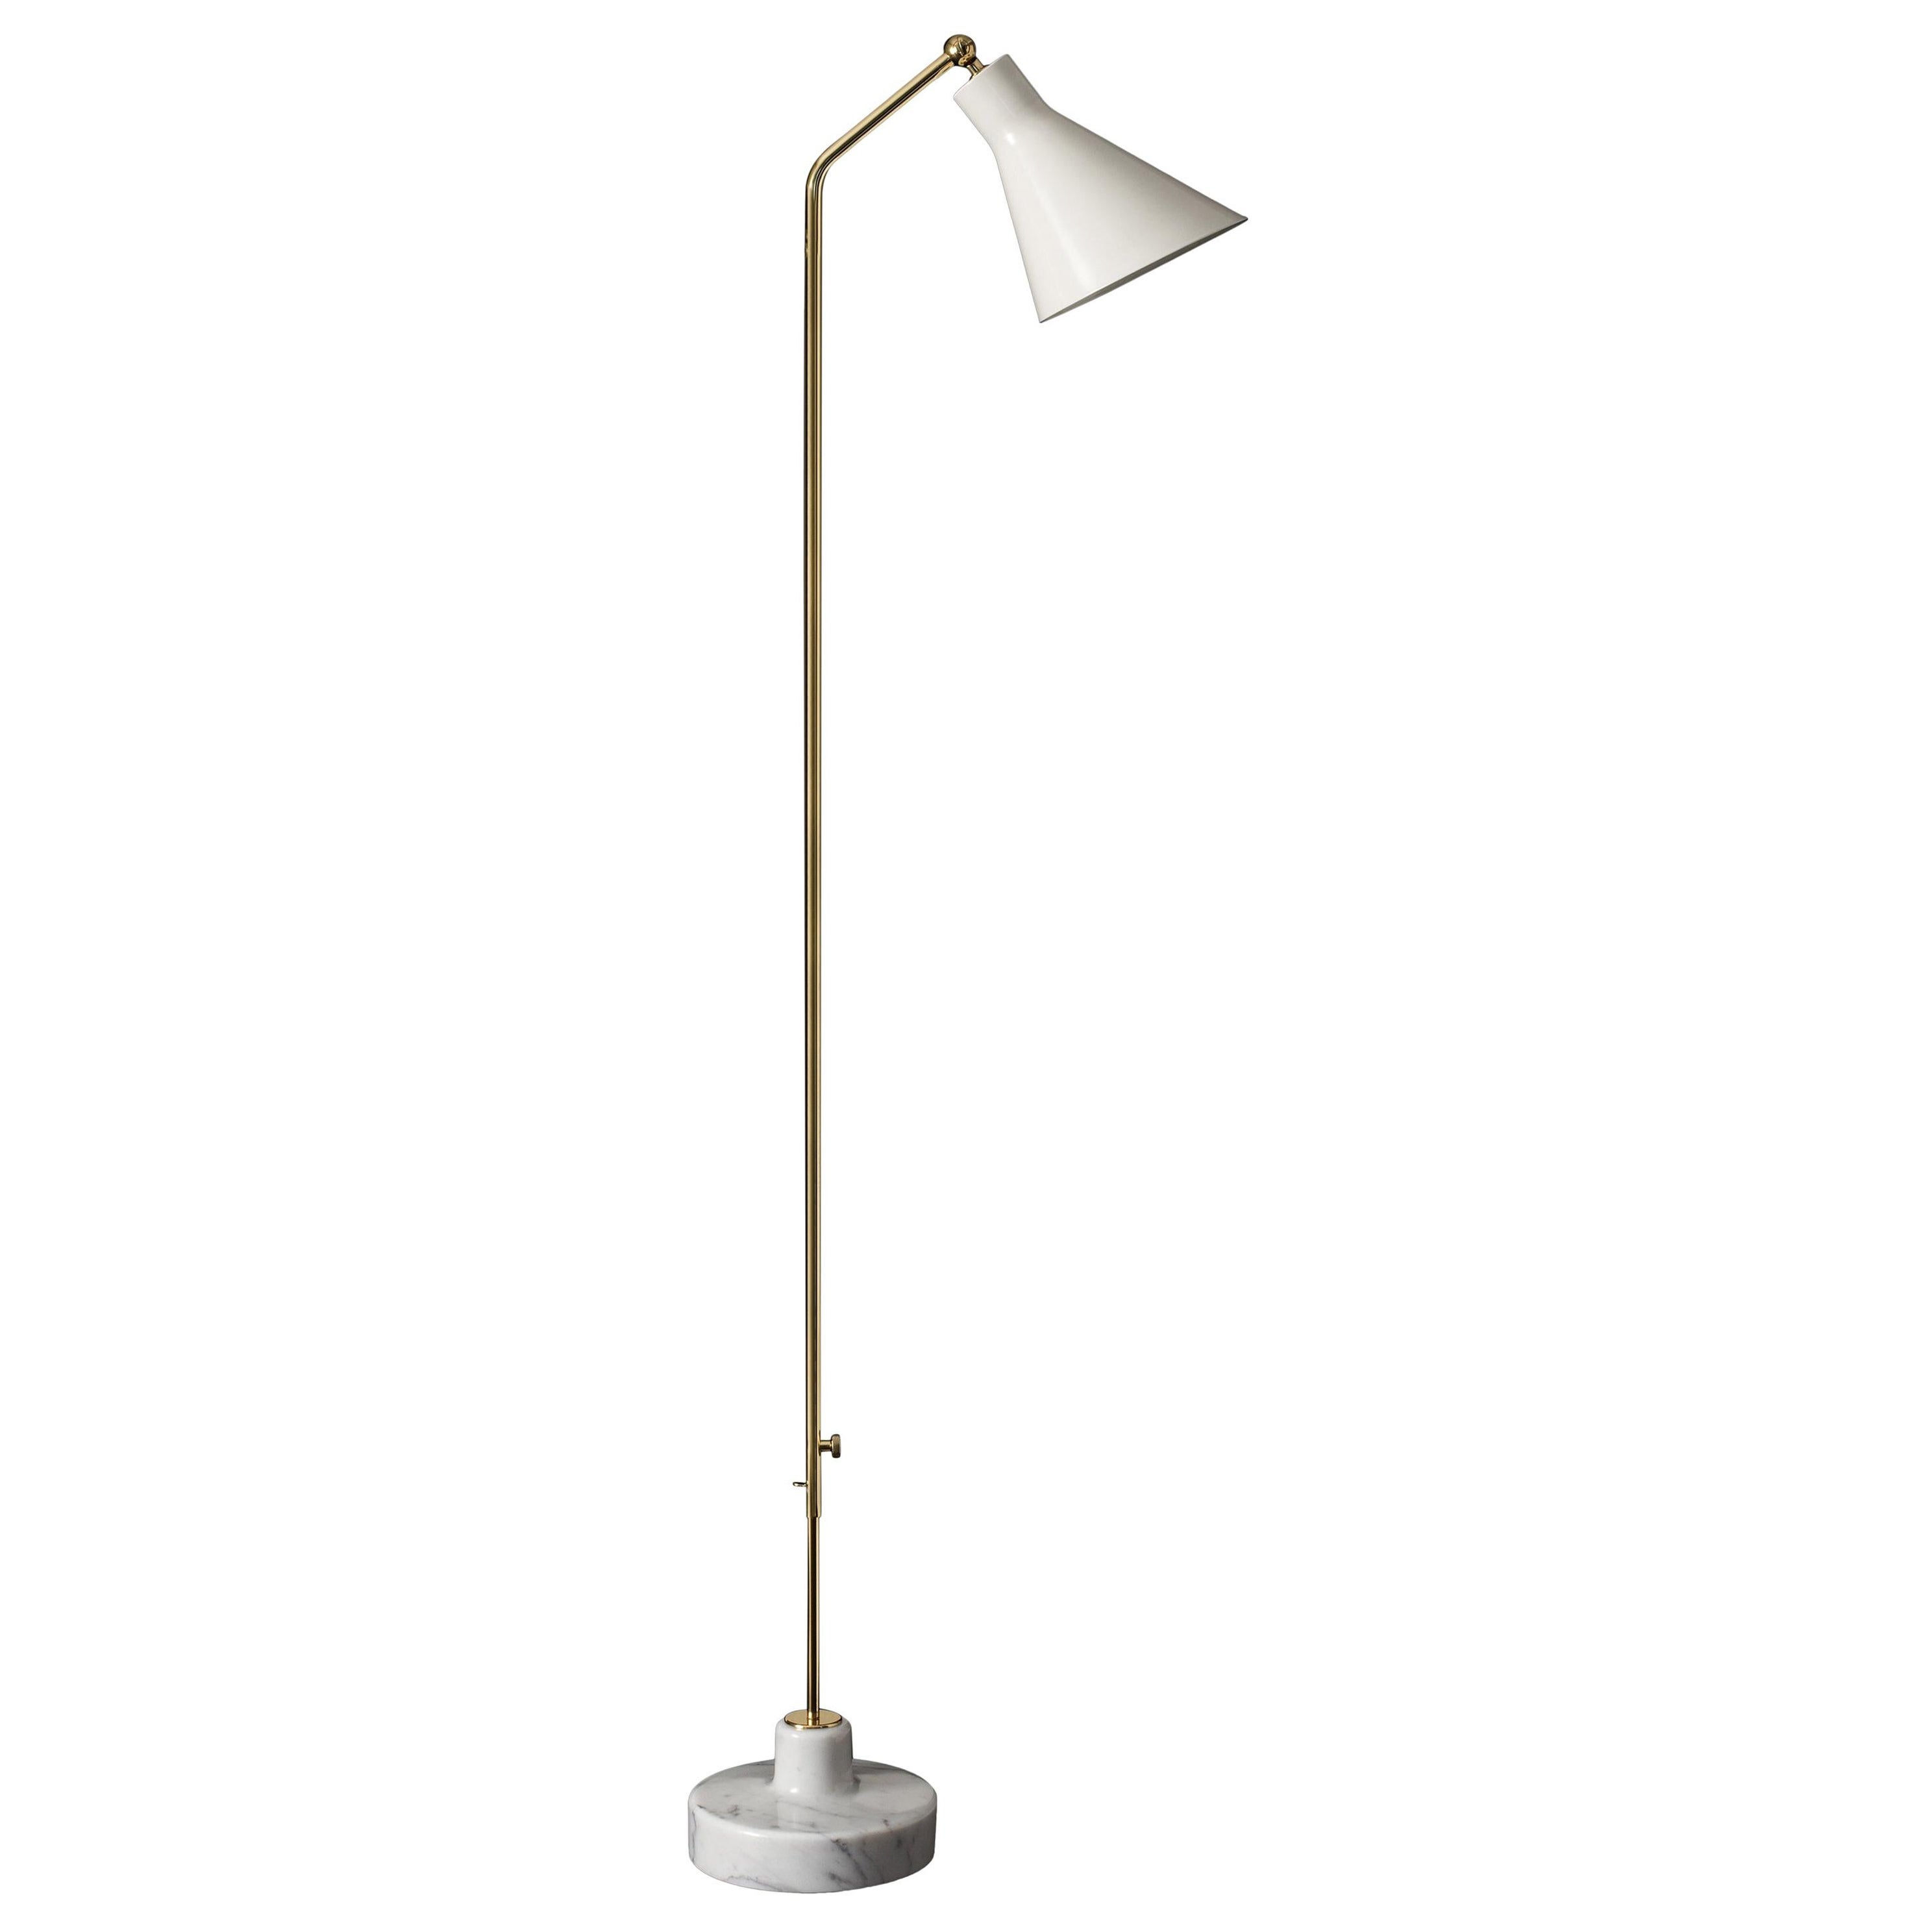 Ignazio Gardella Alzabile Floor Lamp in Brass, Metal and Marble for Tato Italia For Sale